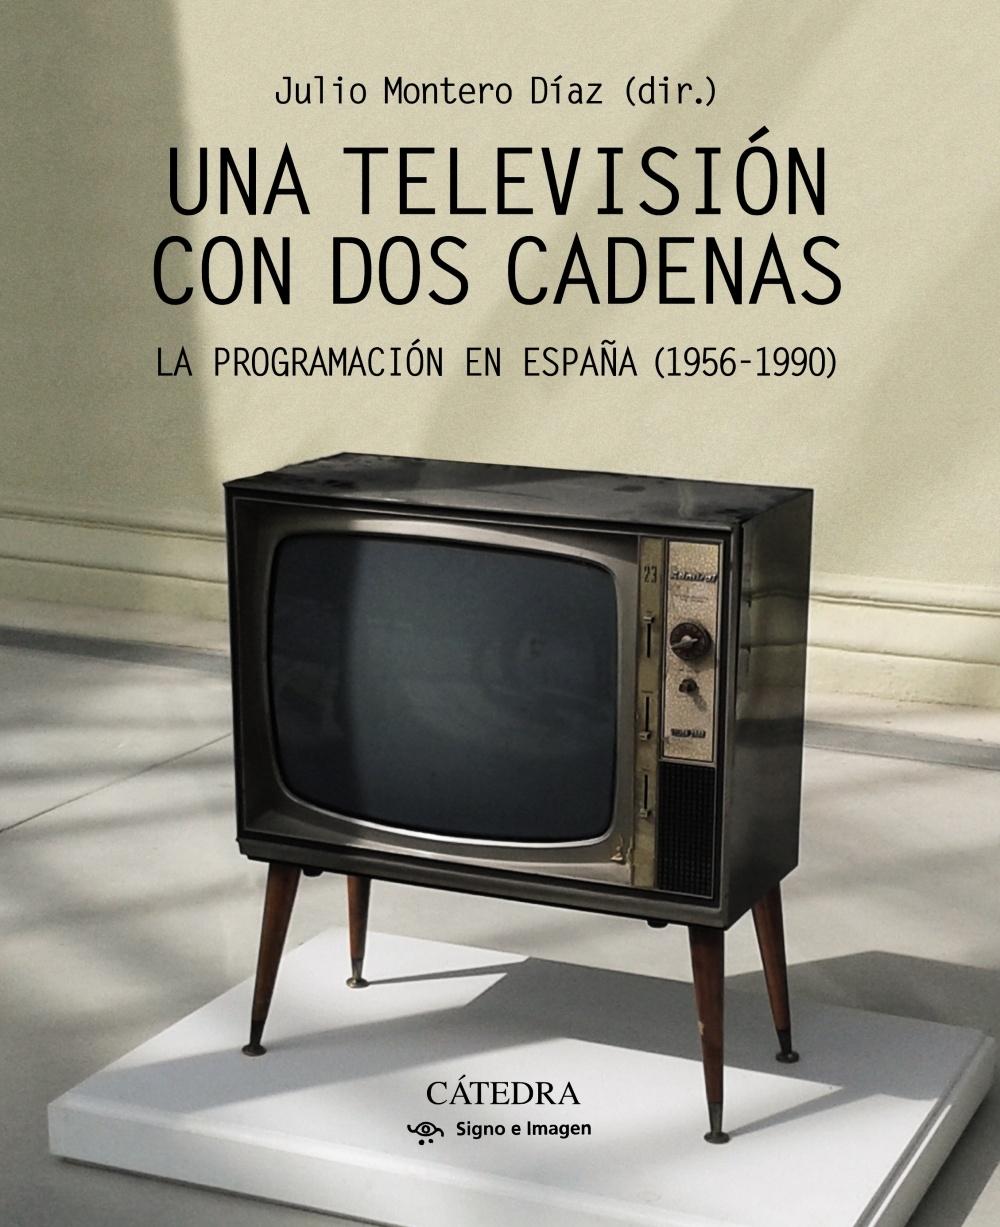 UNA TELEVISIÓN CON DOS CADENAS "La programación en España (1956-1990)"